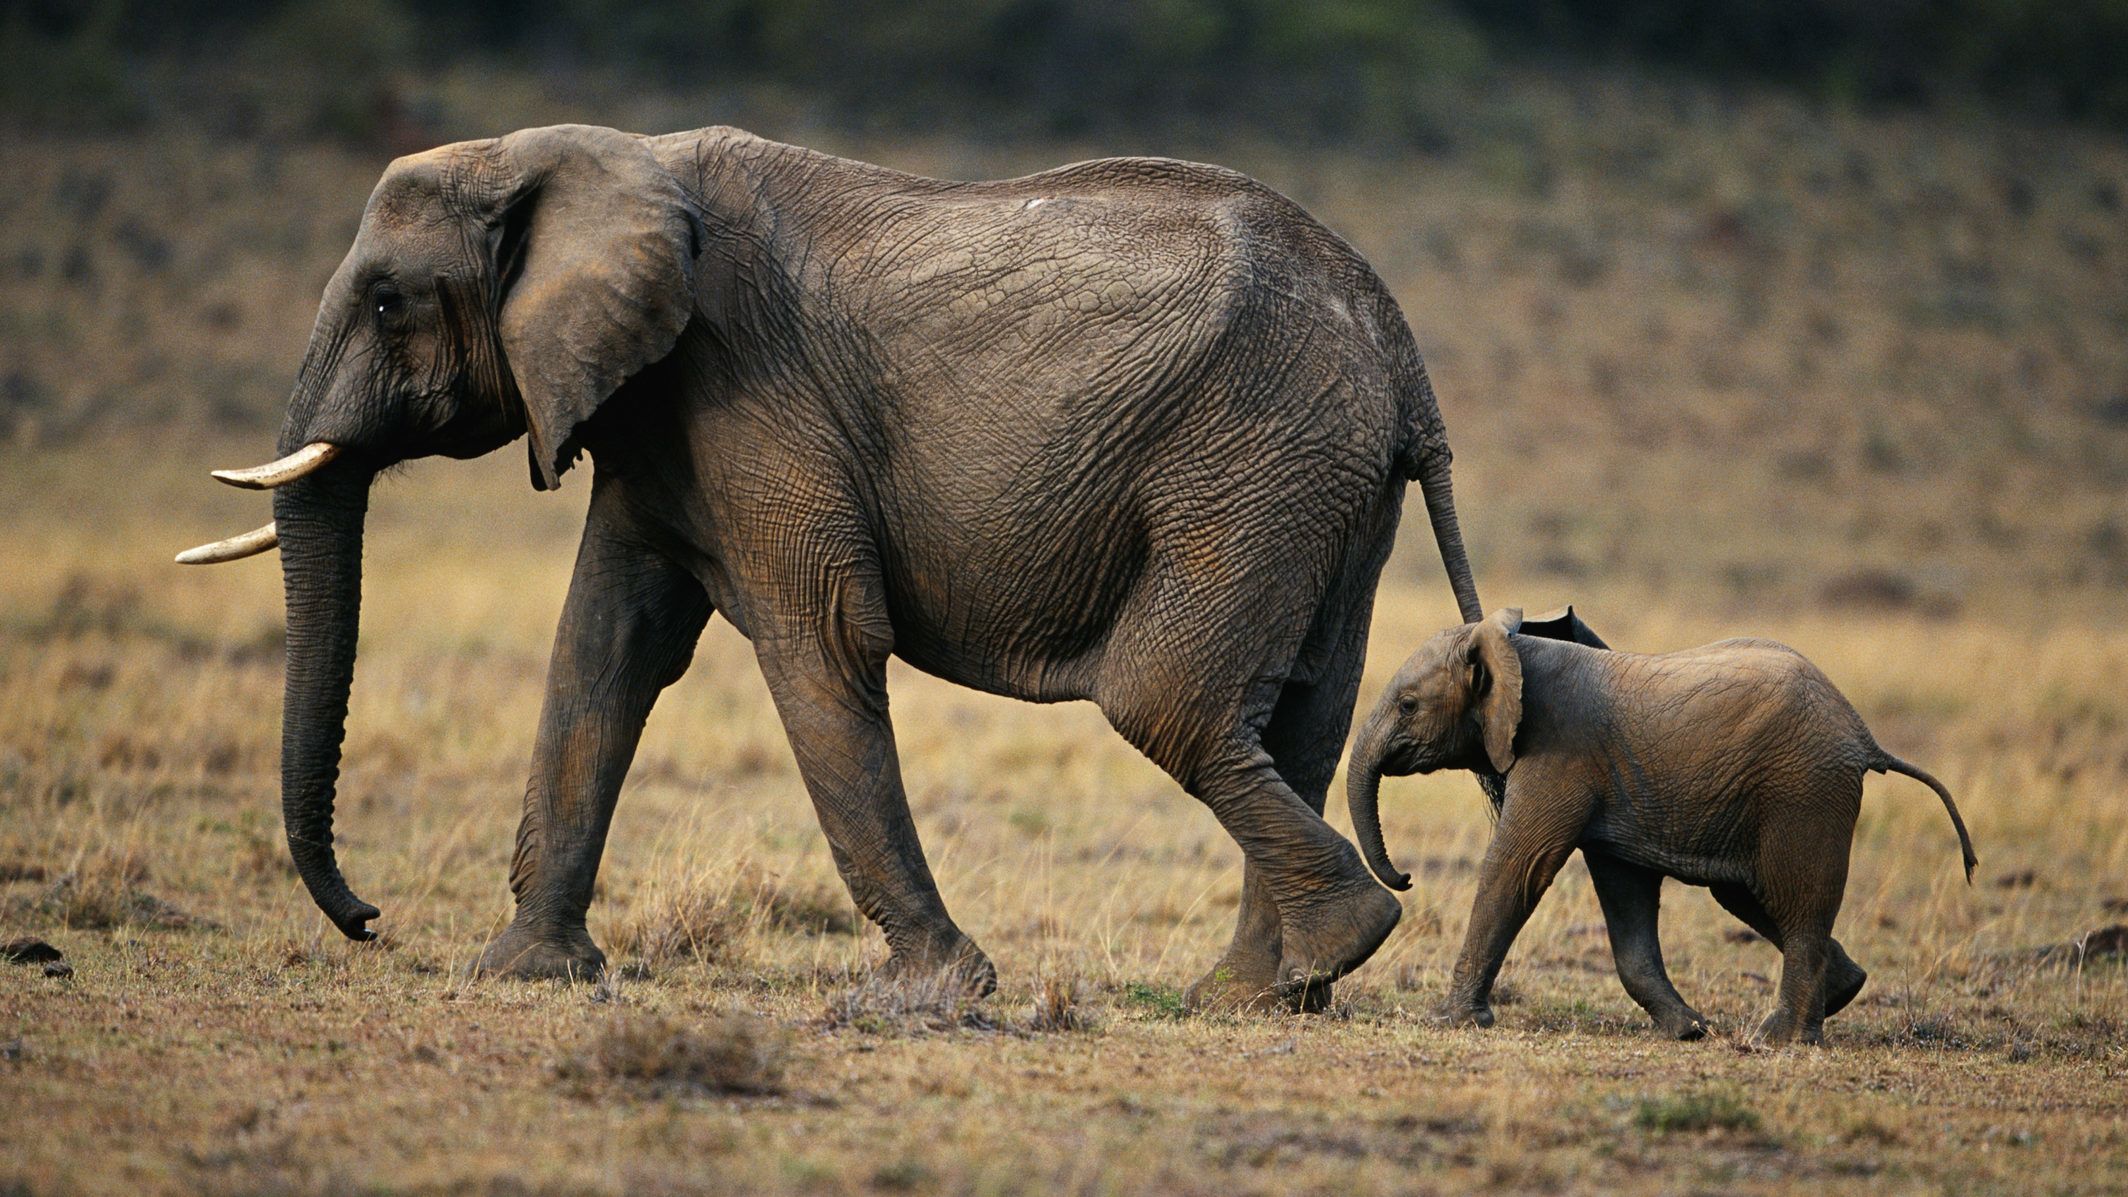 Kiderült, miért pusztultak tömegesen az elefántok